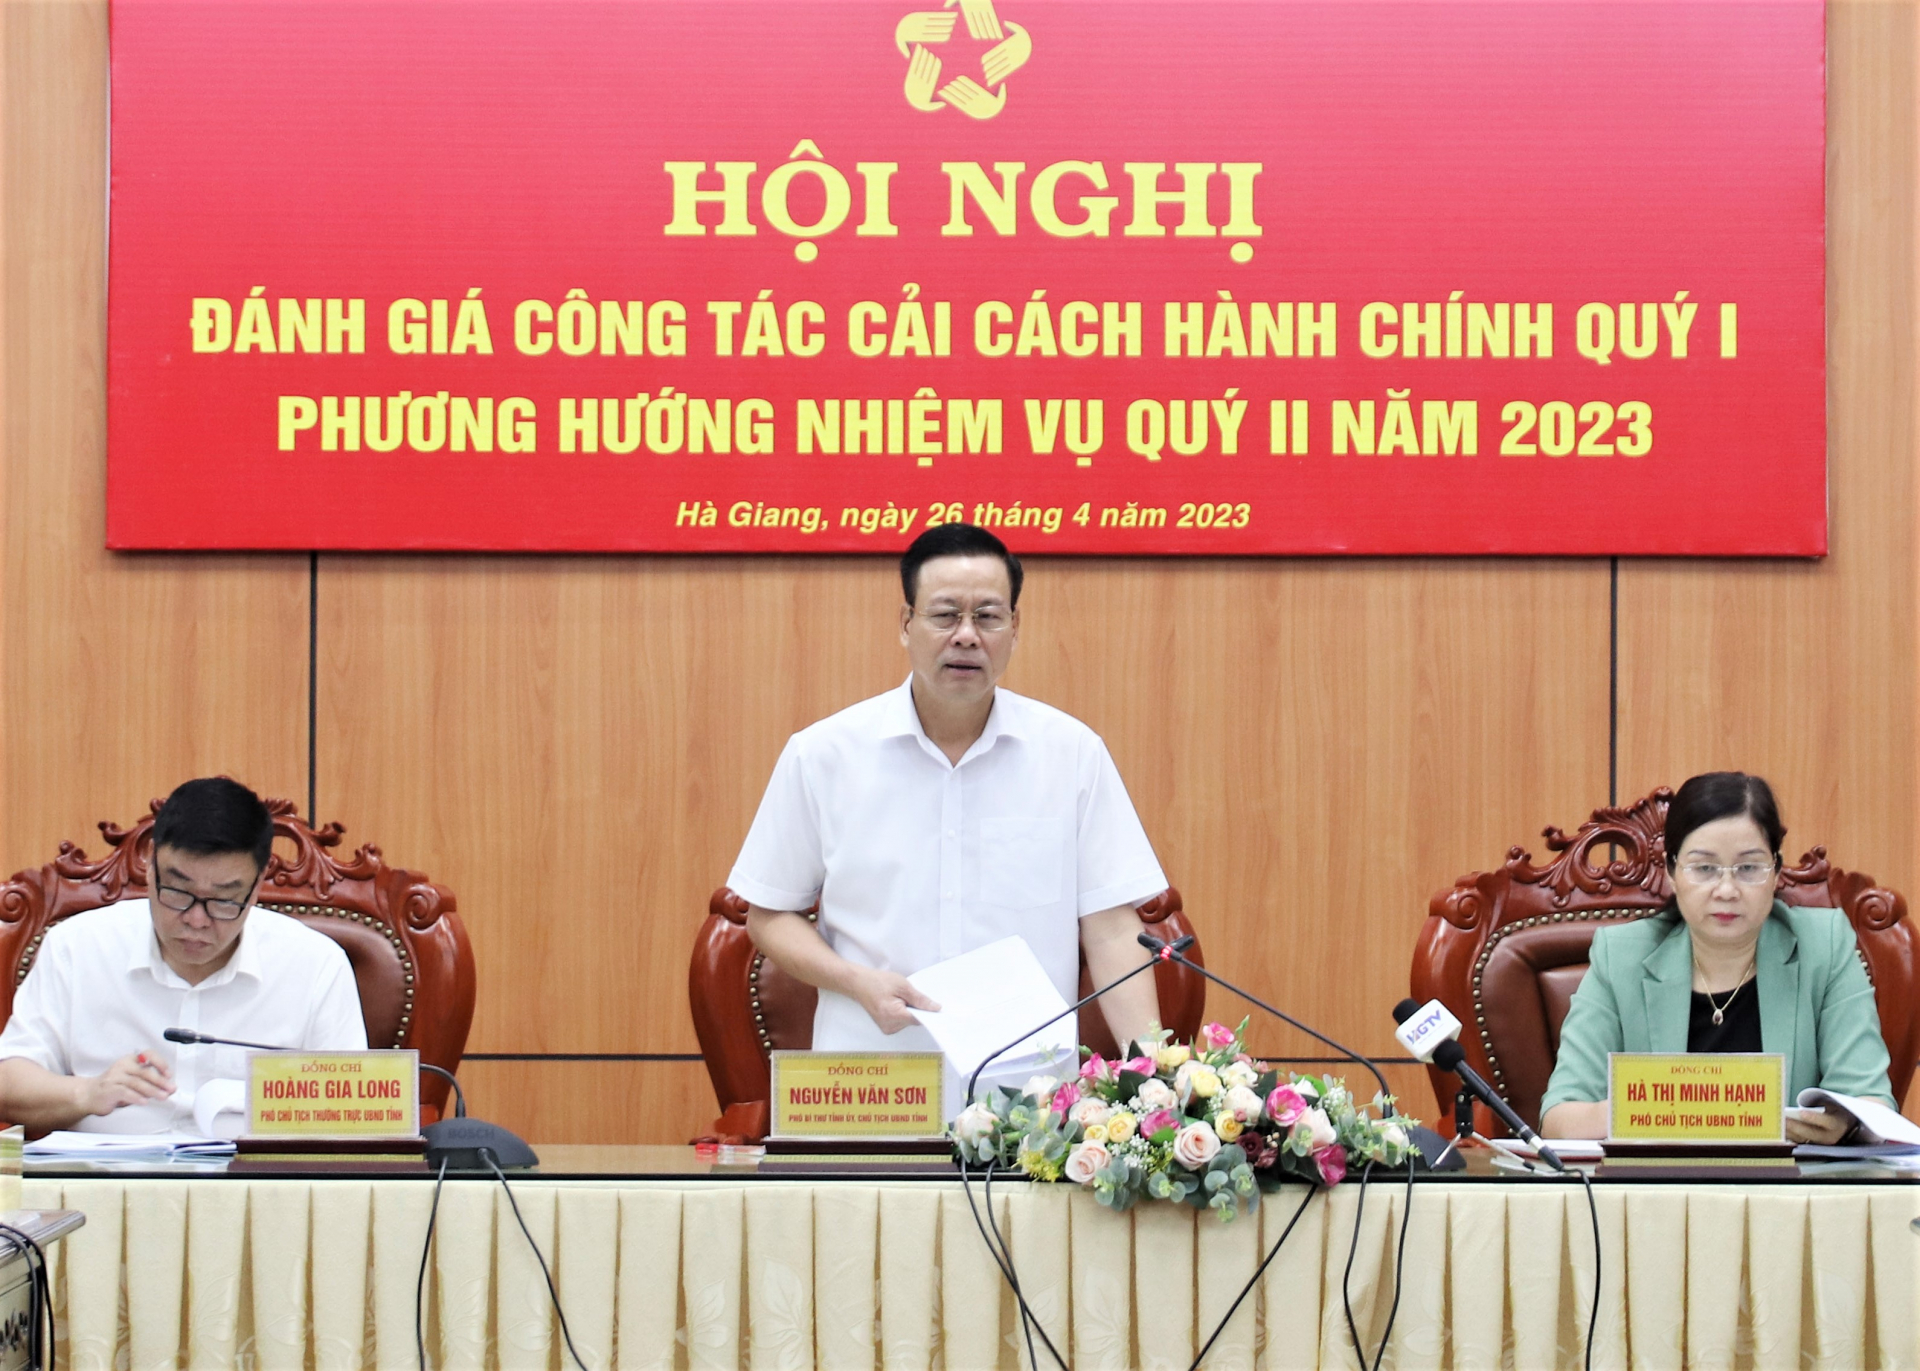 Chủ tịch UBND tỉnh Nguyễn Văn Sơn kết luận hội nghị.
